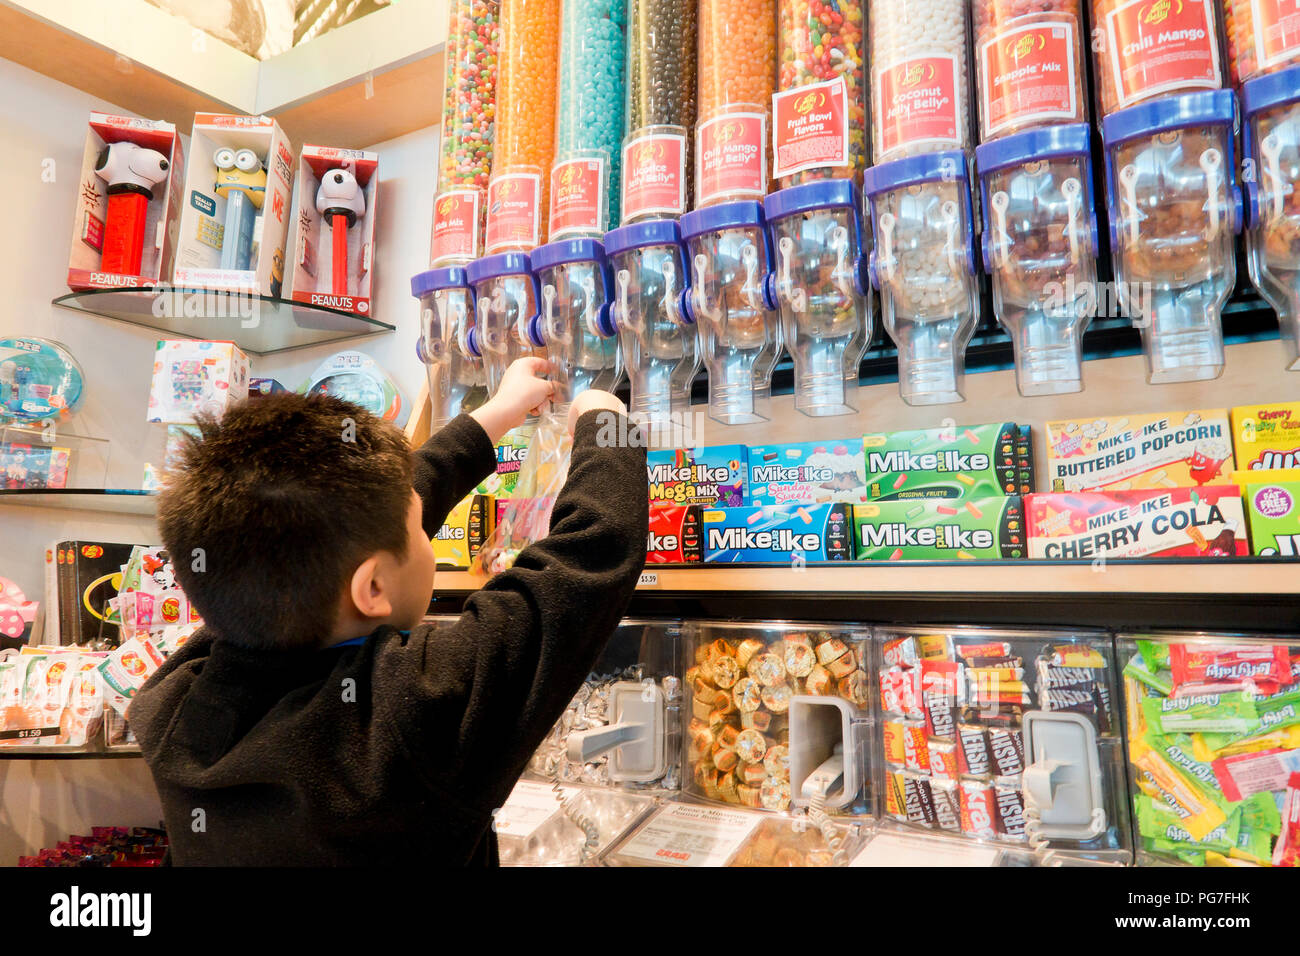 Bambino di età compresa tra i 8 e acquisto di jellybeans presso un negozio di caramelle (sweet shop) - USA Foto Stock